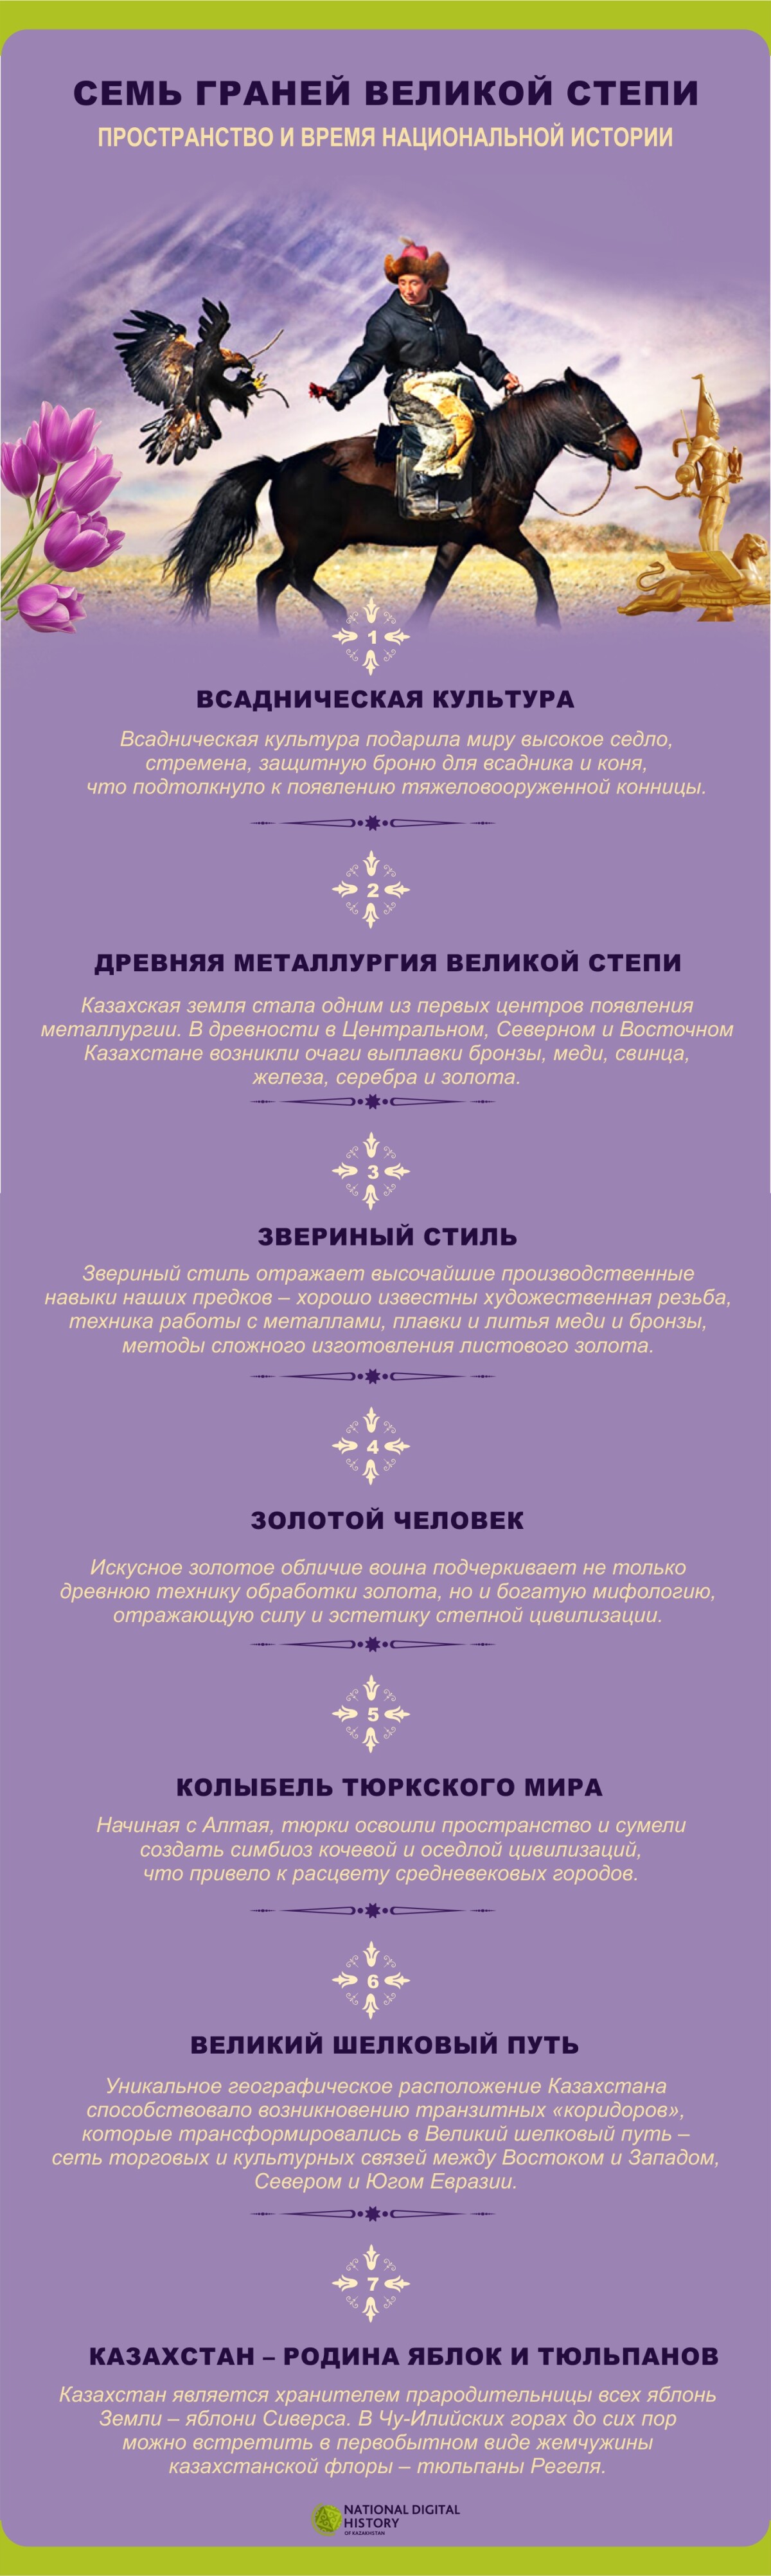 Семь граней великой степи (Инфографика) - e-history.kz